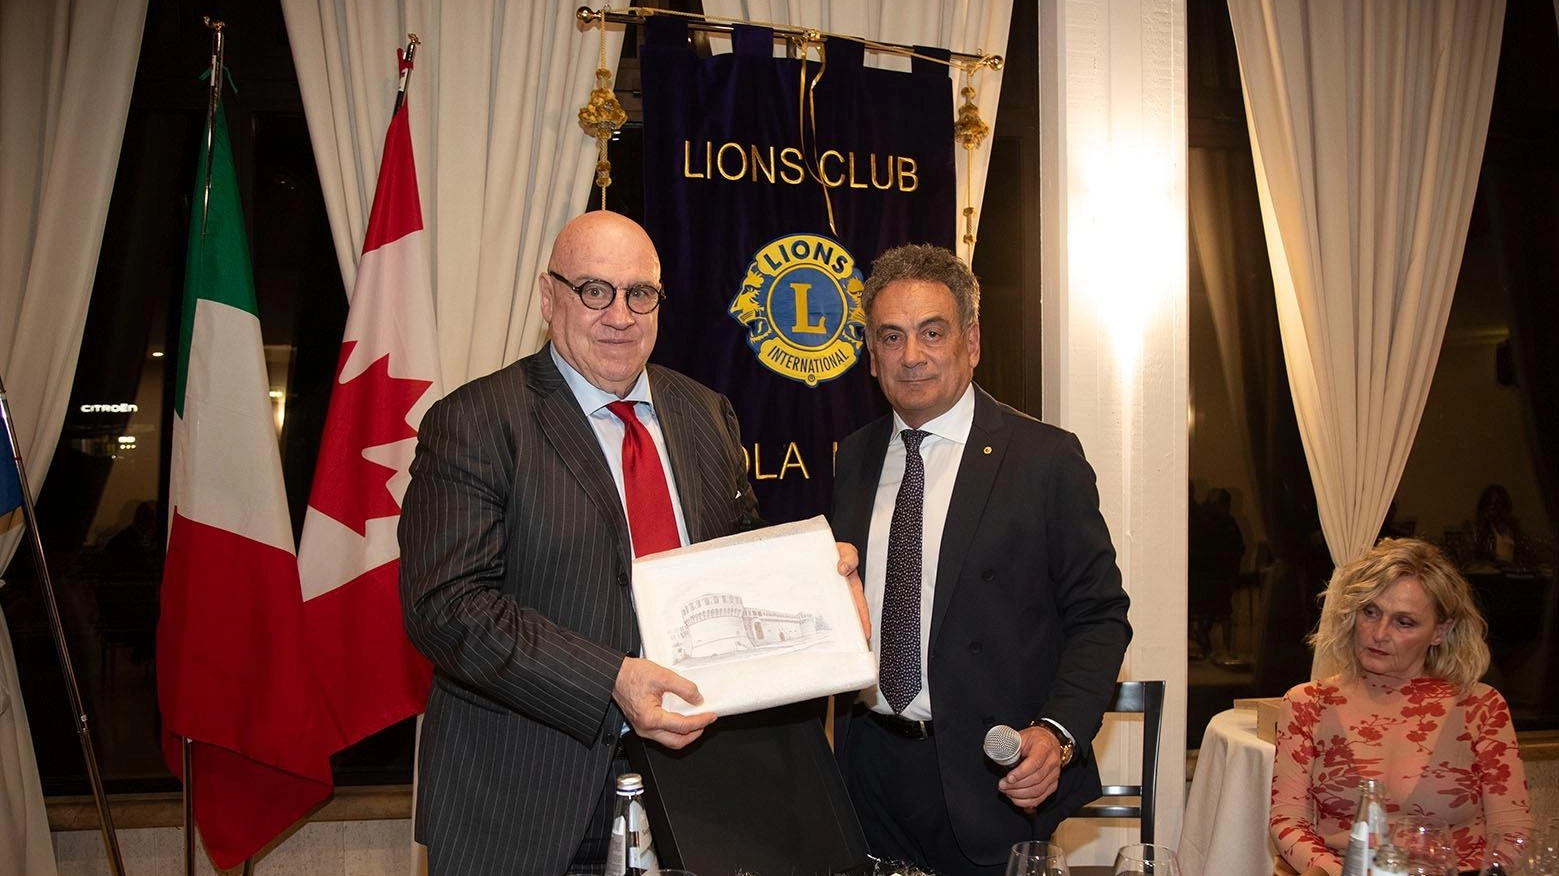 L'imprenditore Alberto Forchielli tiene una conferenza sullo stato dell'economia mondiale al Lions Club Imola Host, ricevendo omaggio per il suo contributo nel settore.